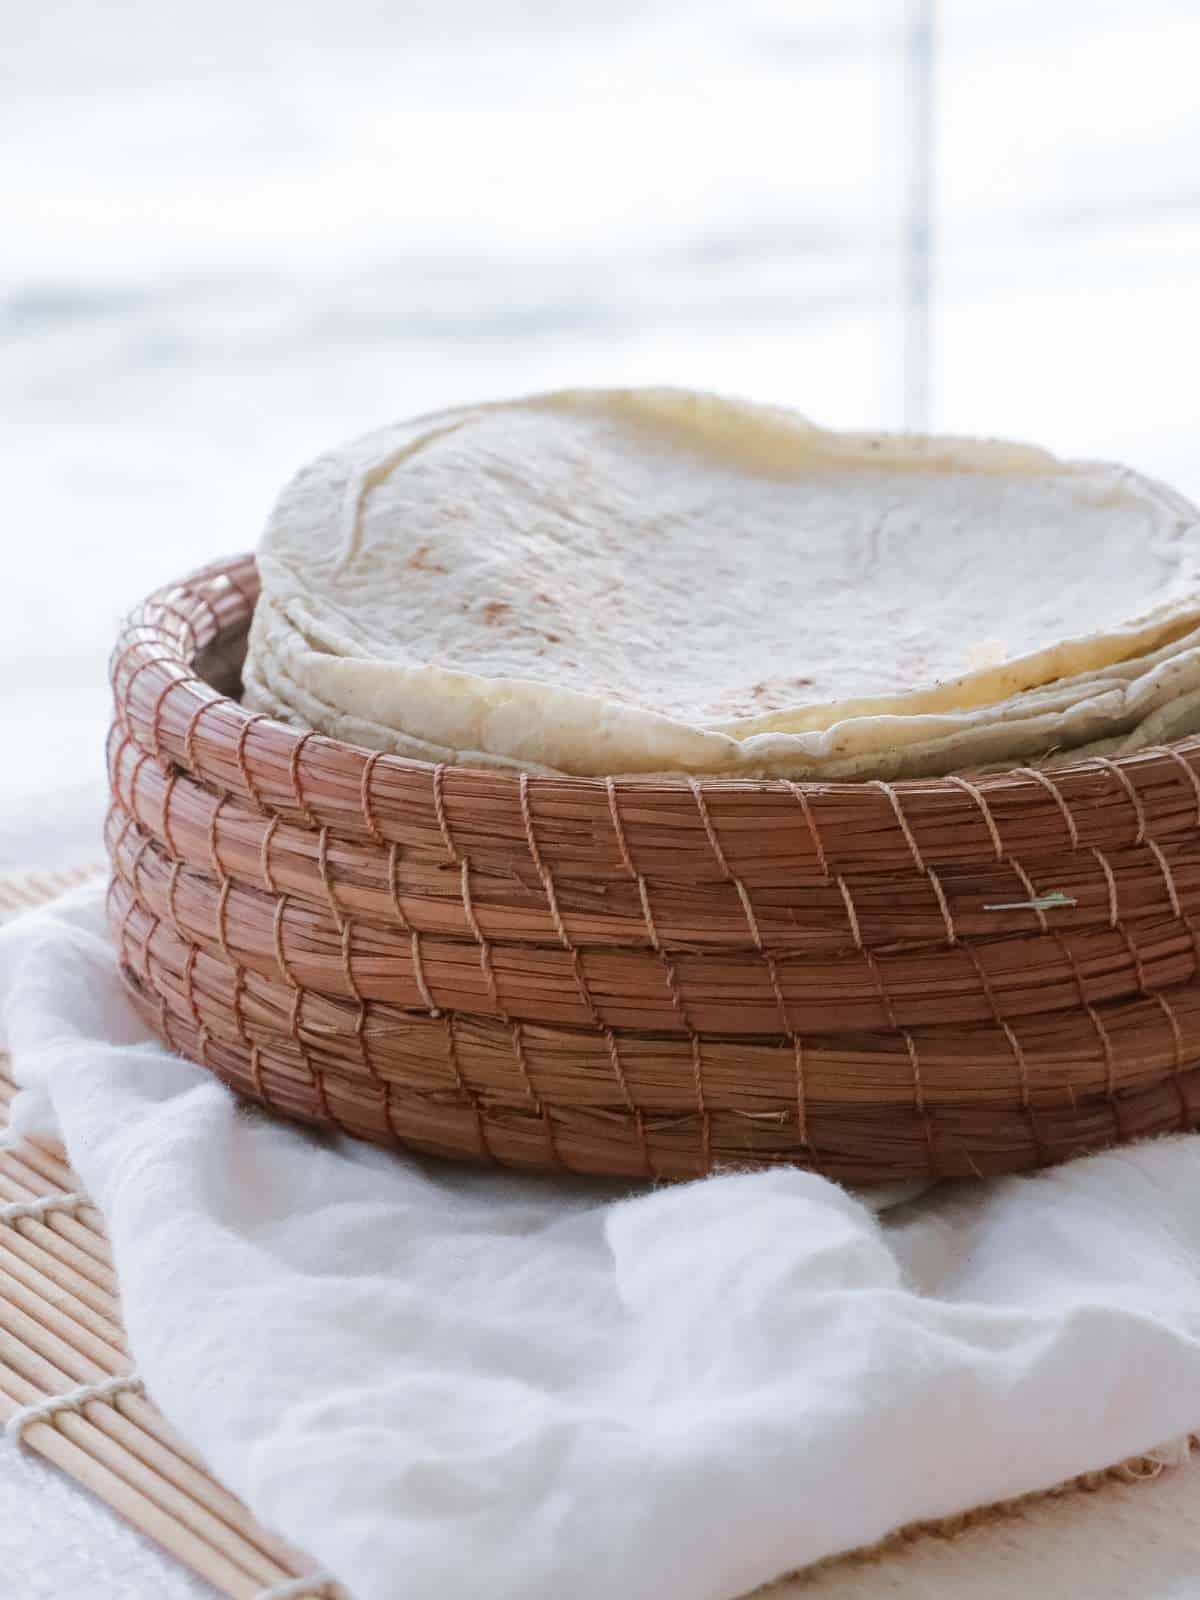 Vegan flour tortillas stacked in a woven basket.